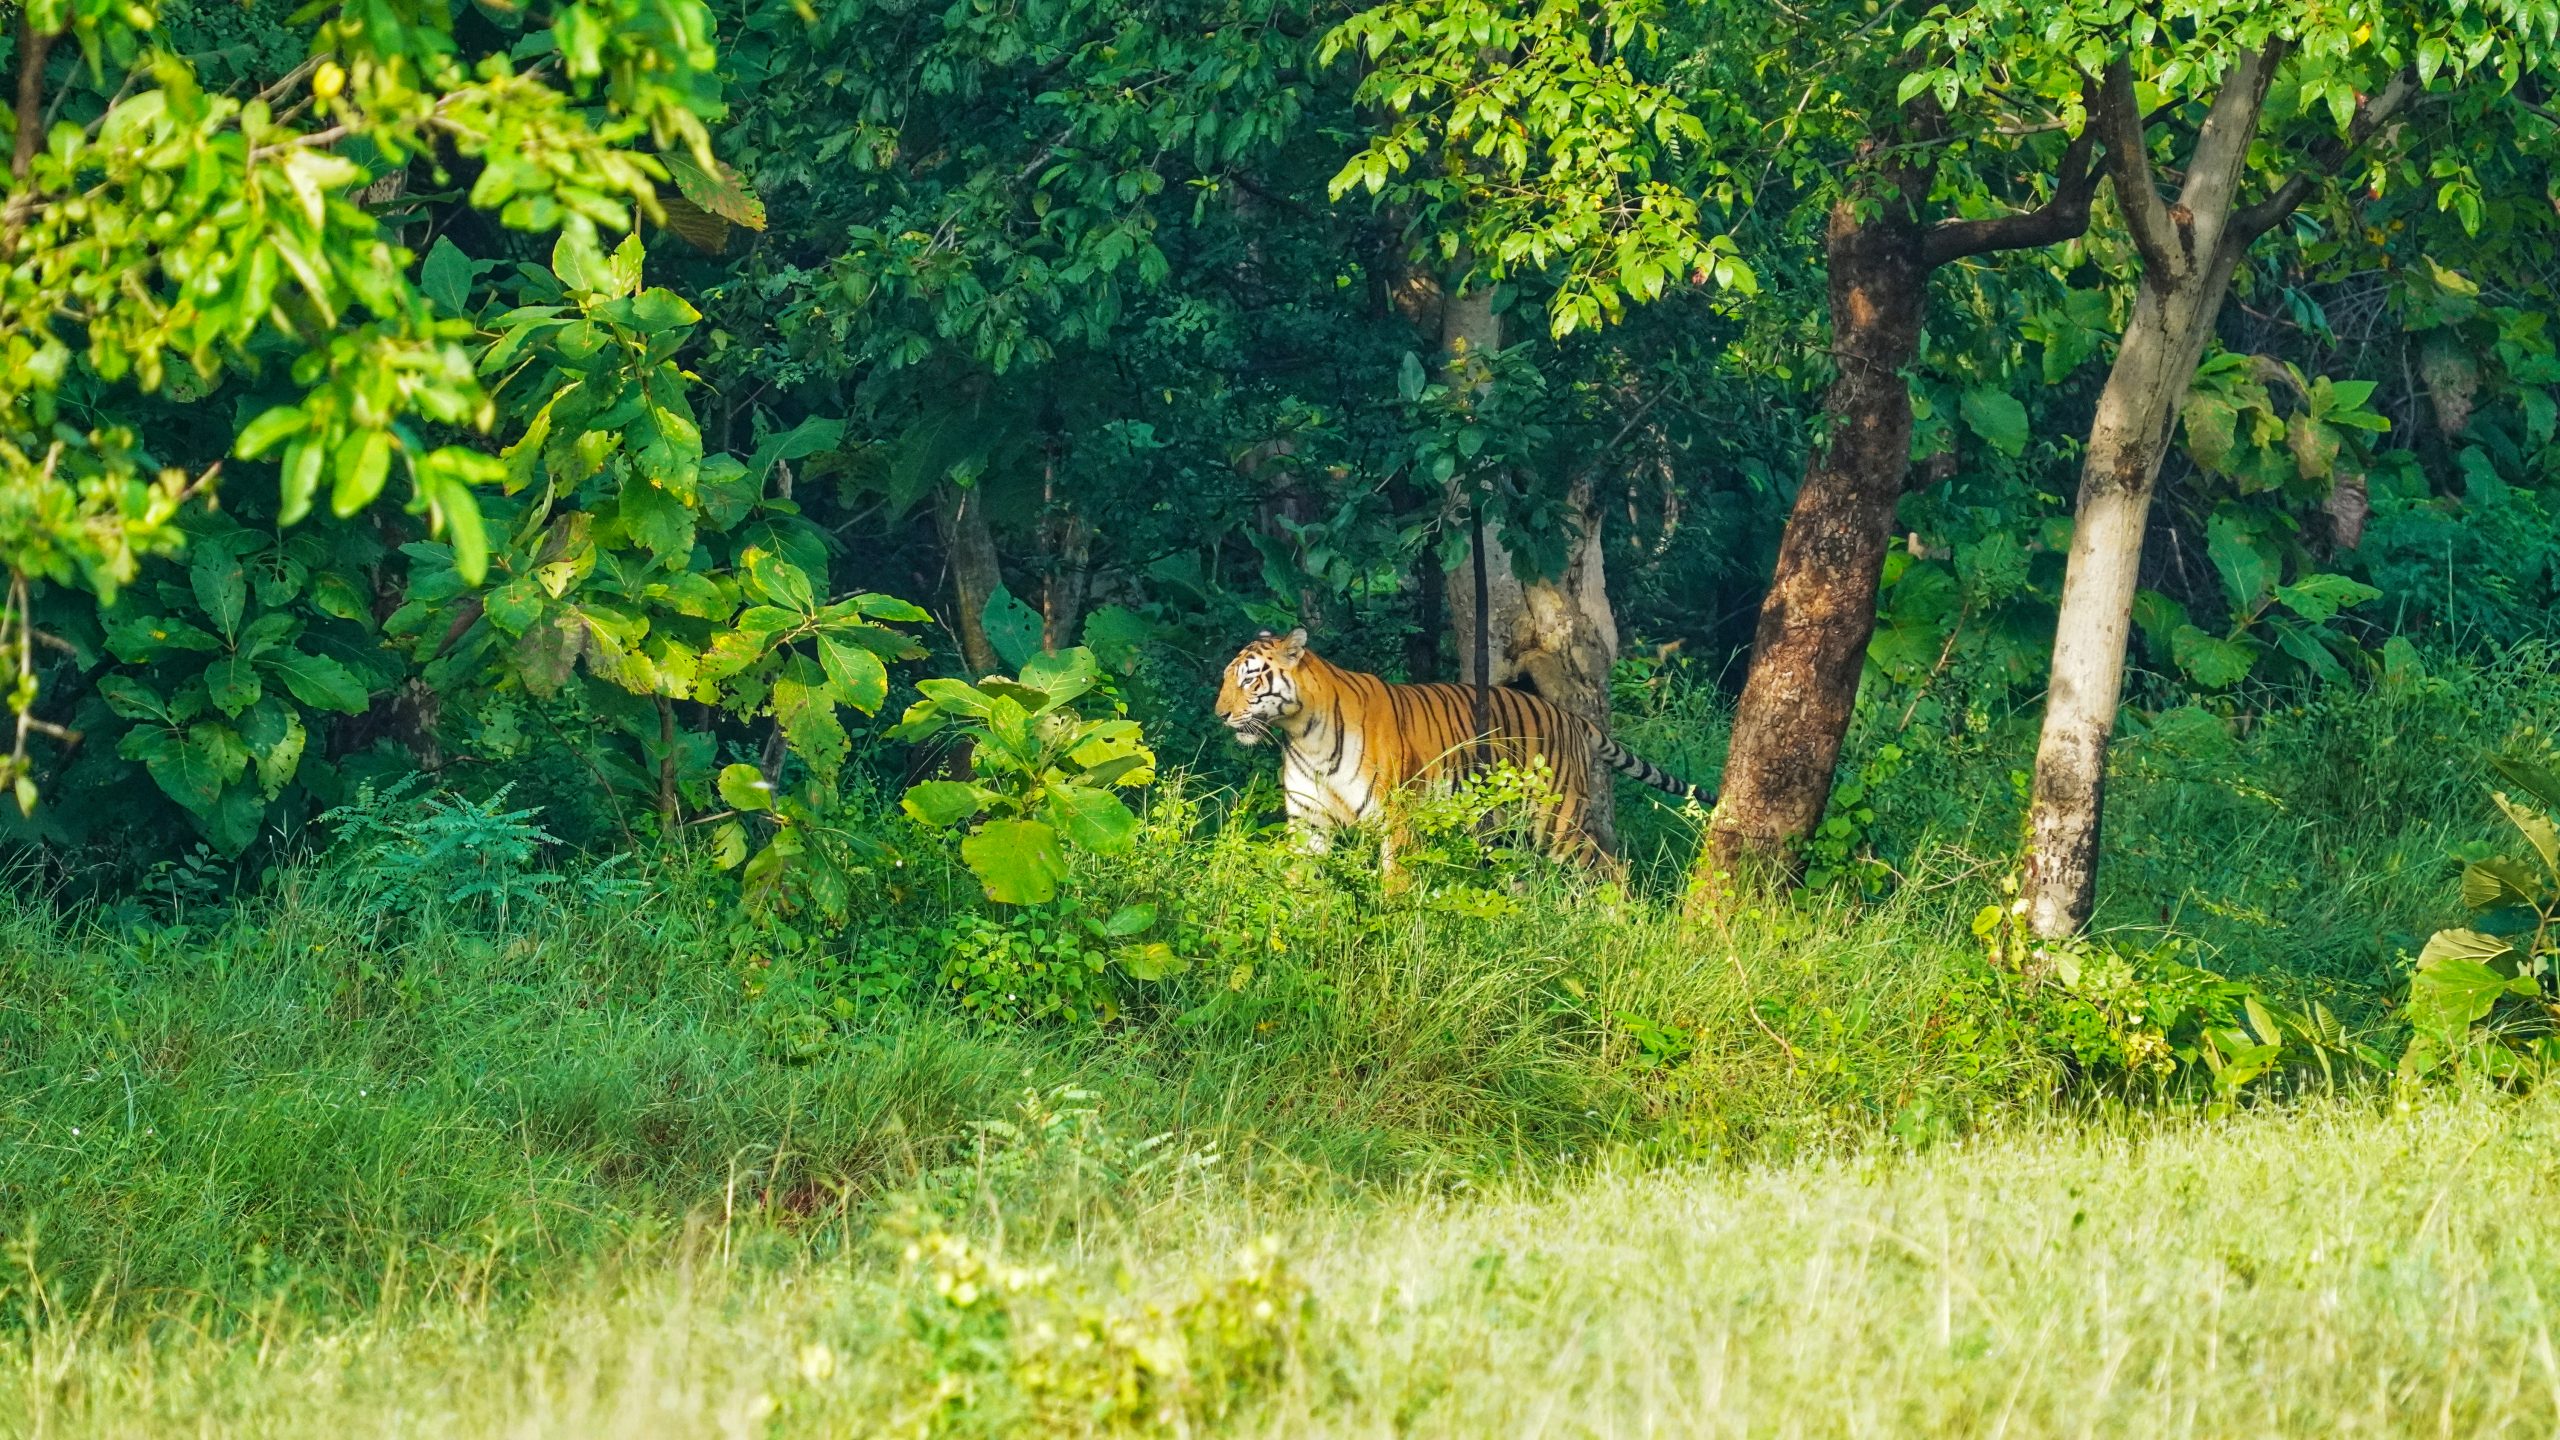 A Bengal tiger